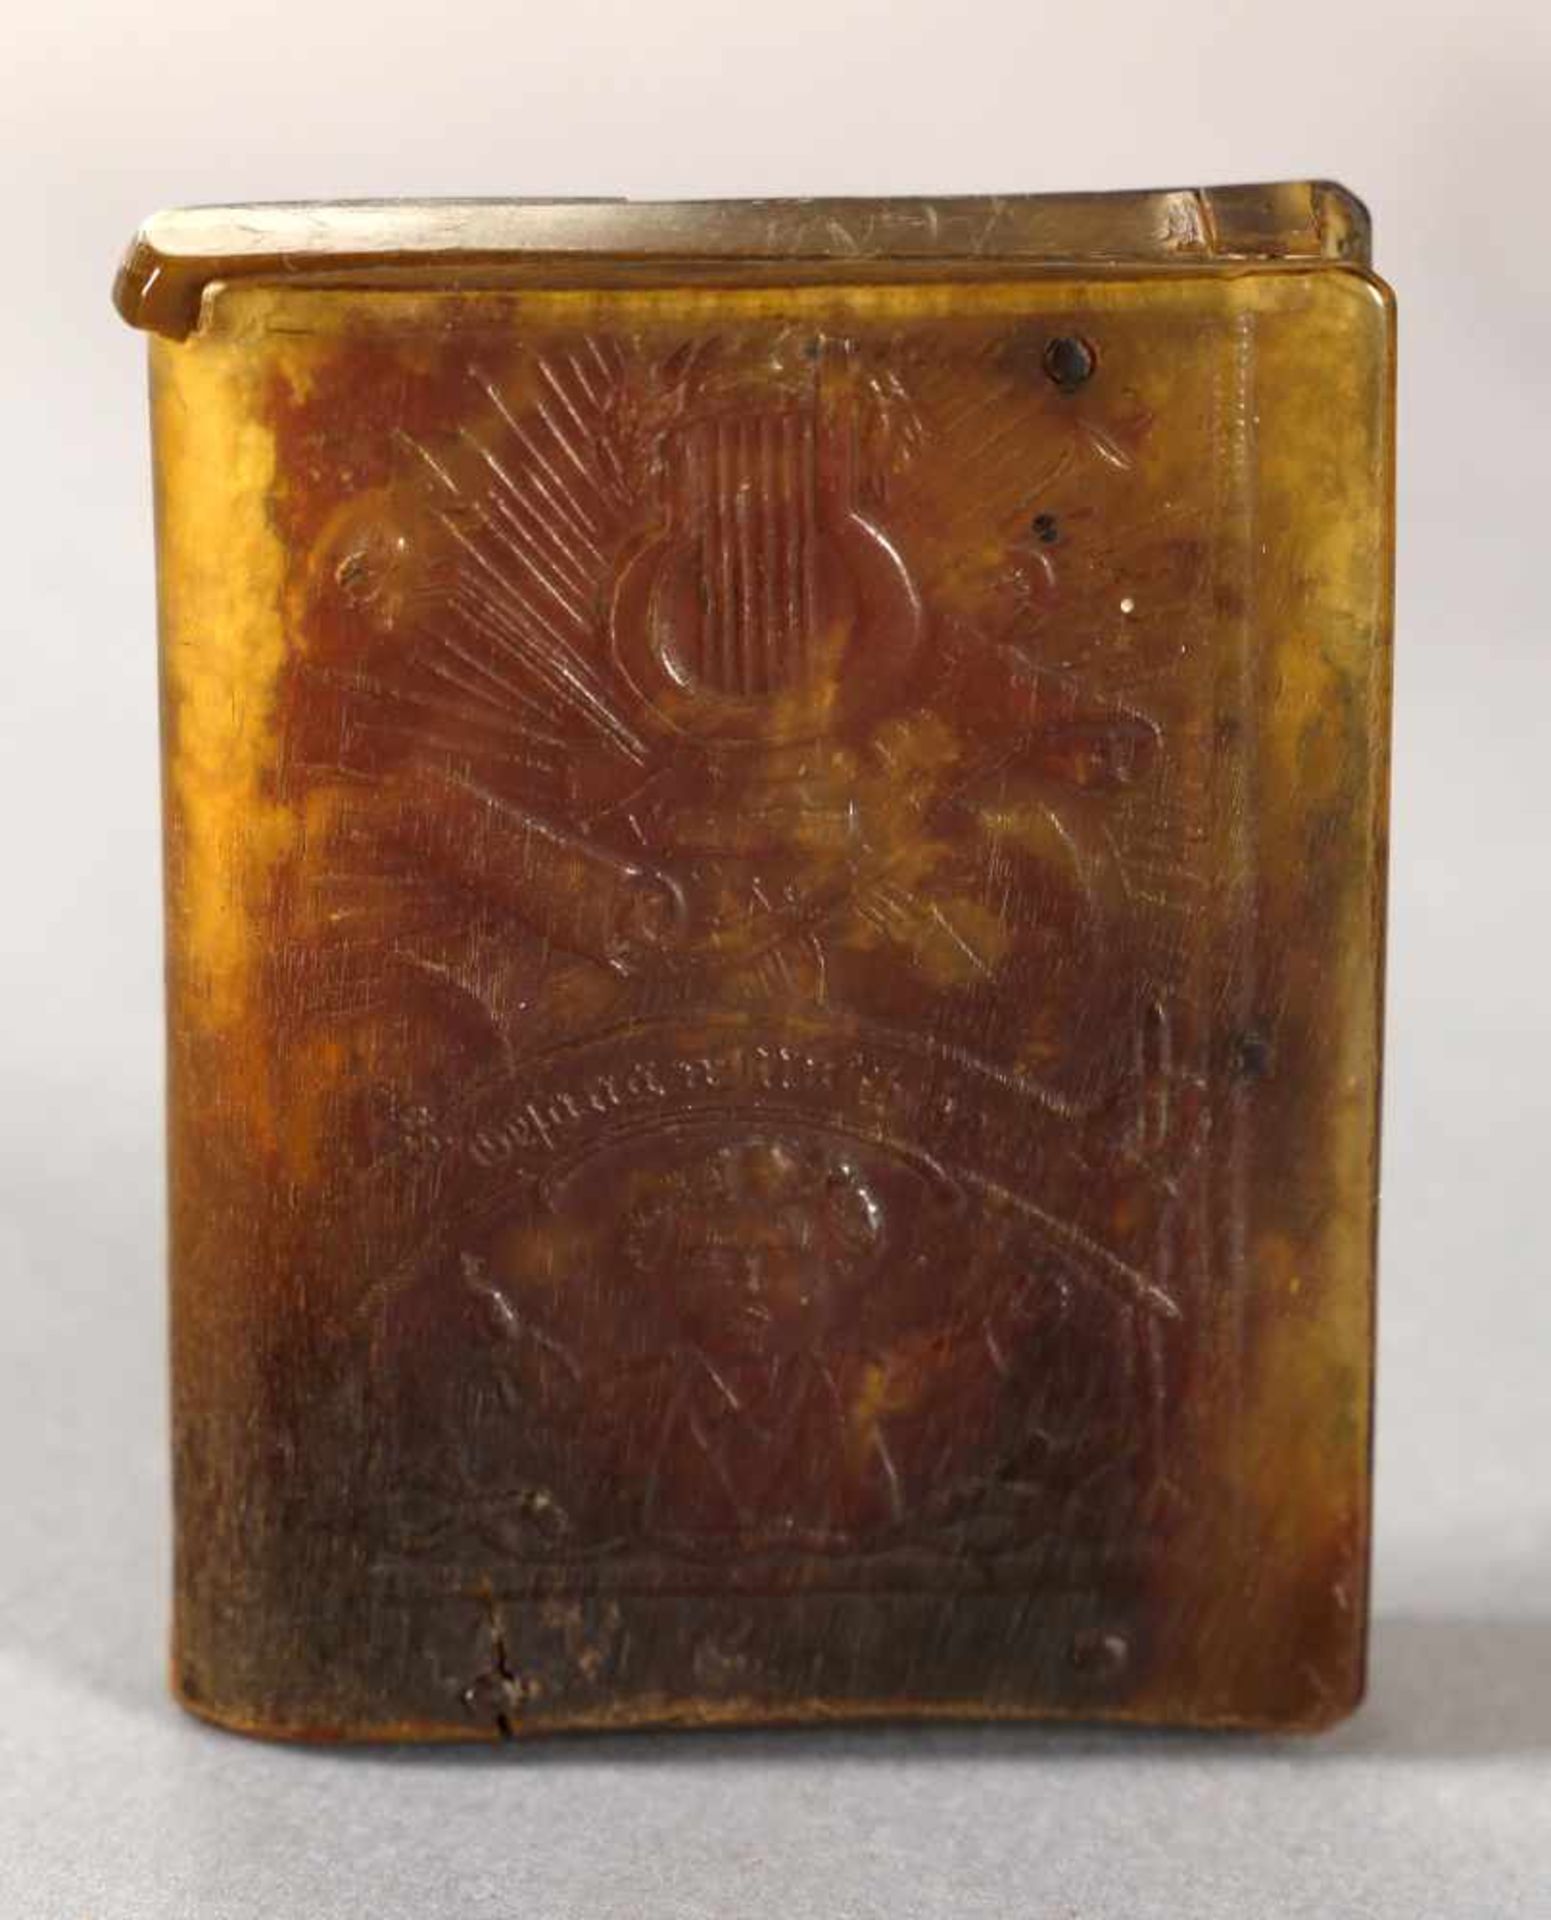 Bergmännischer Streichholzbehälter, möglw. Sachsen oder alpenländisch, um 1840-60aus gepresstem